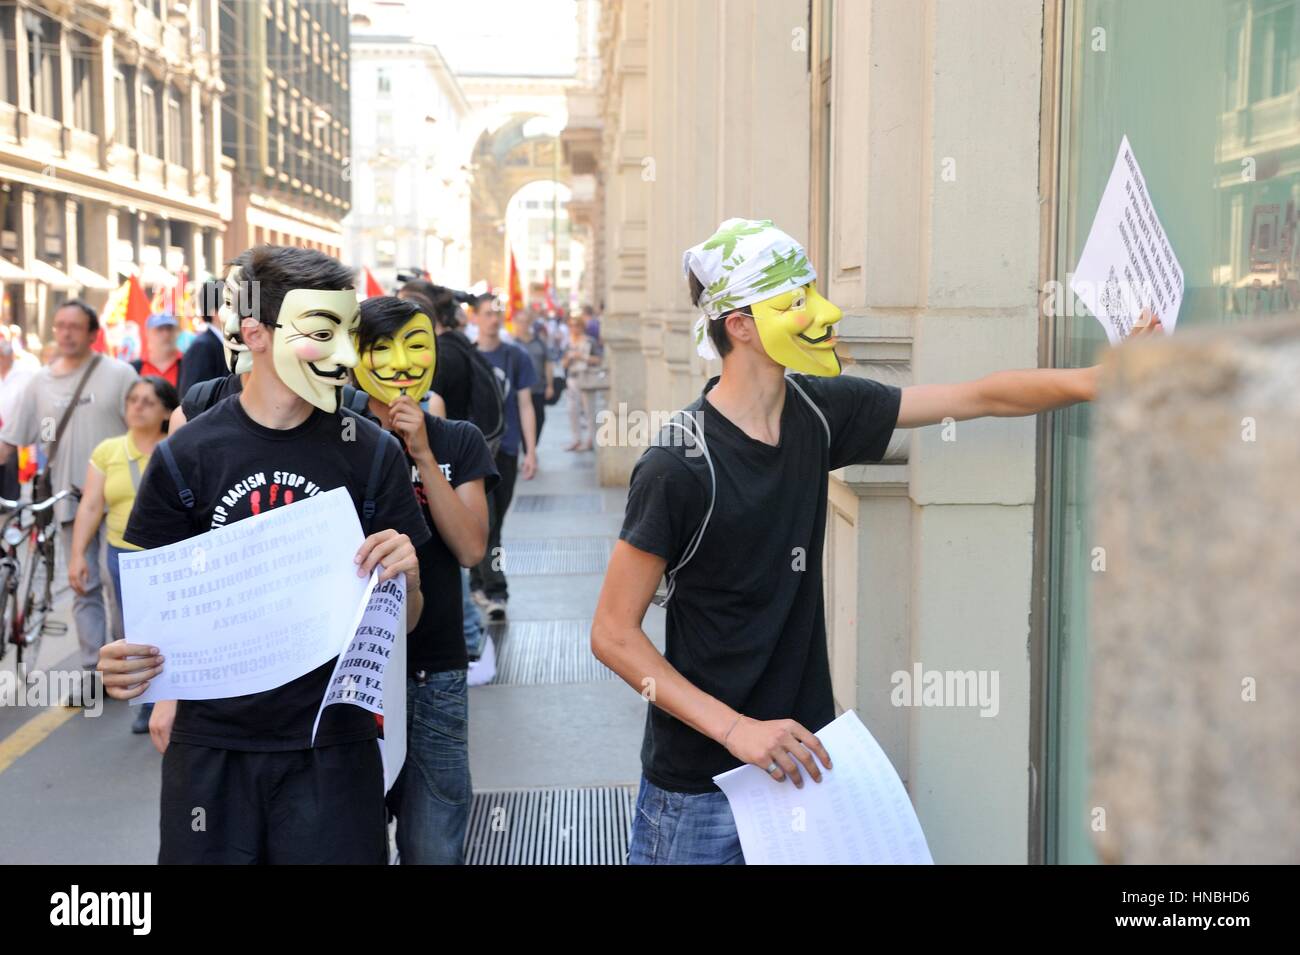 Manifestant anonyme contre l'austérité en démonstration Banque D'Images